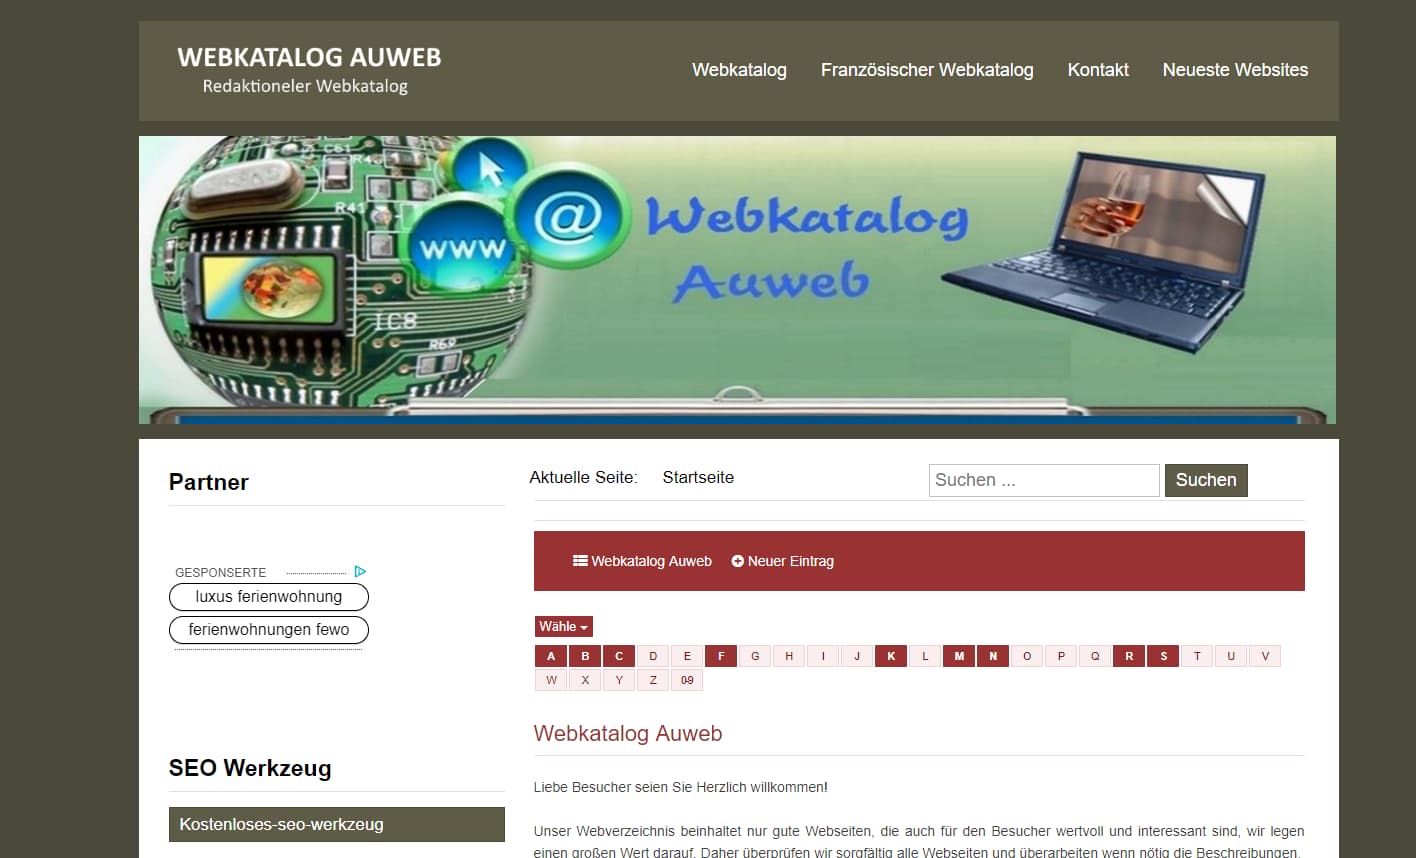 Details : Auweb - Allgemeiner Webkatalog